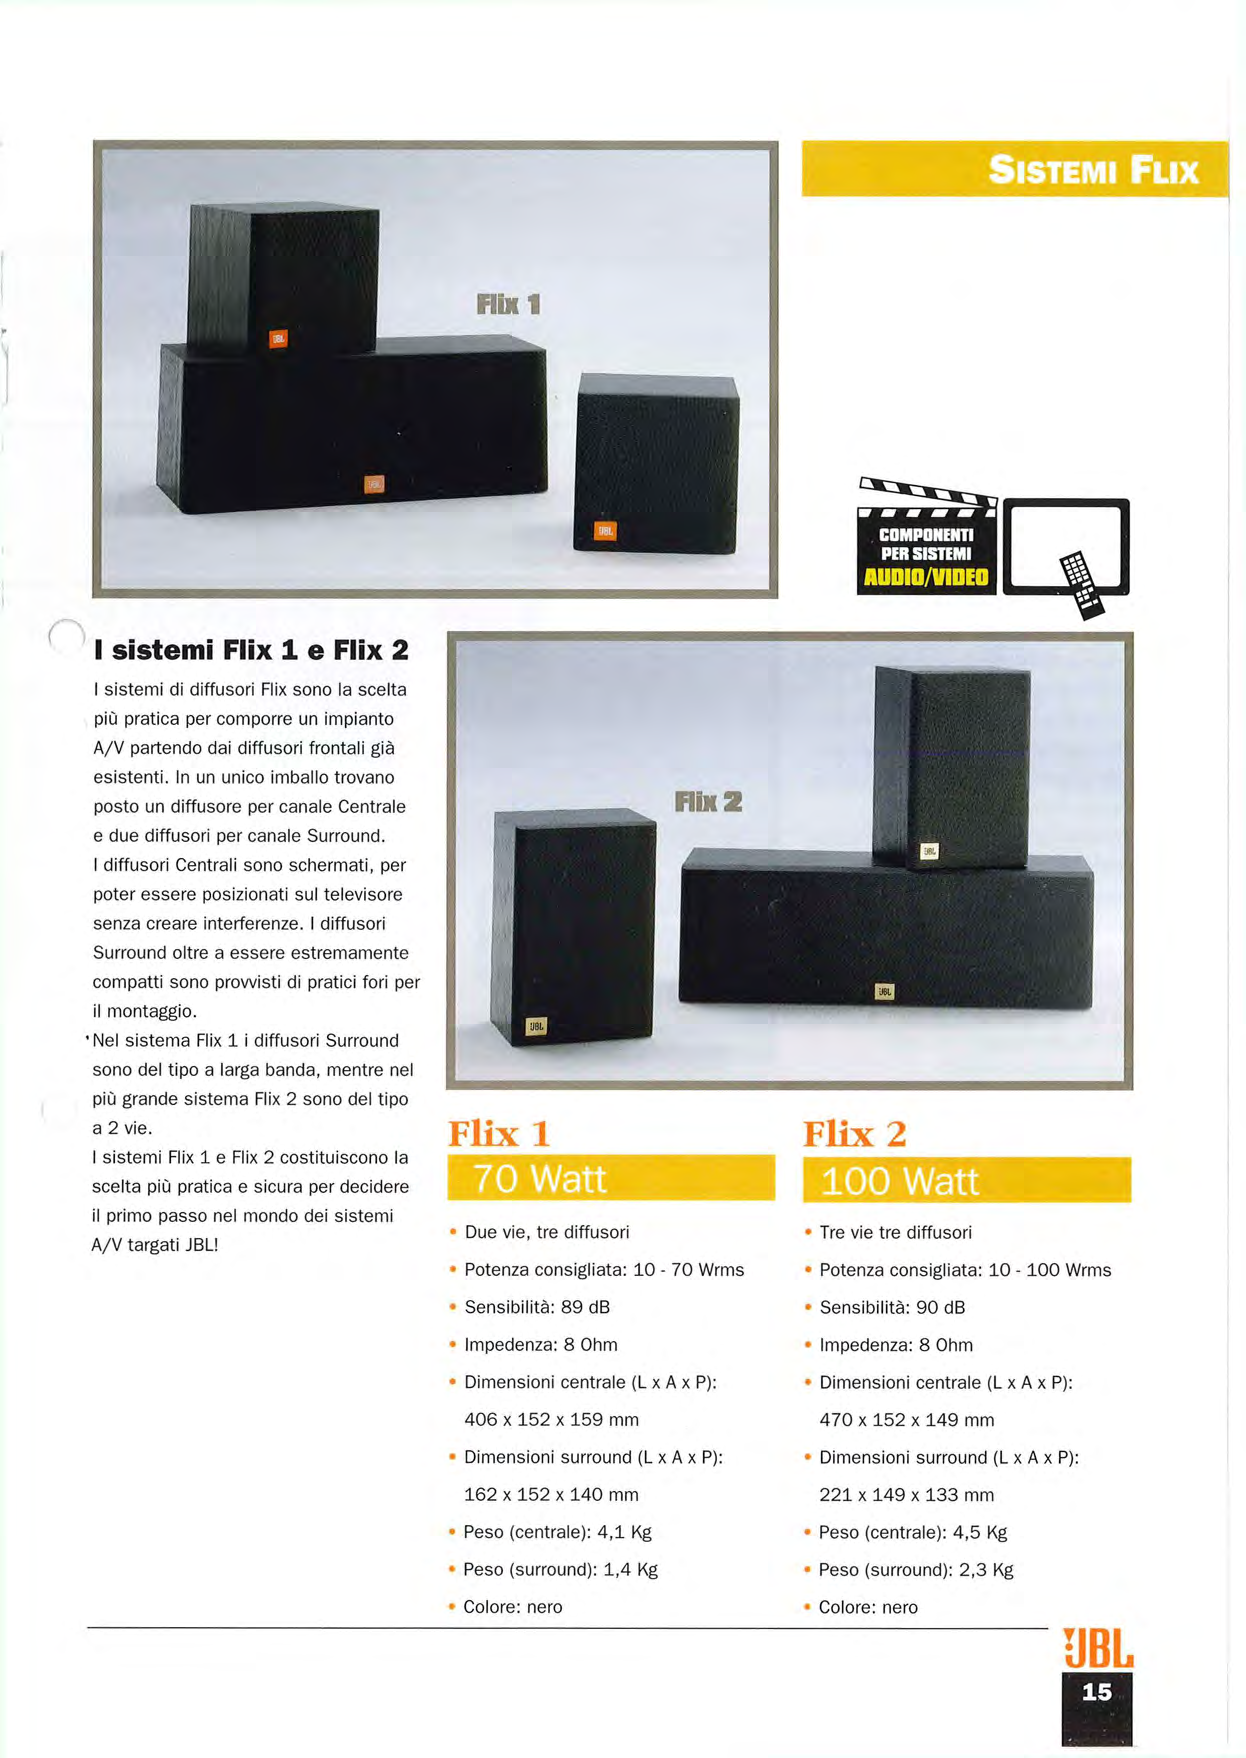 SISTEMI FLIX Flix 1 I sistemi Flix 1 e Flix 2 I sistemi di diffusori Flix sono la scelta più pratica per comporre un impianto A/V partendo dai diffusori frontali già esistenti.